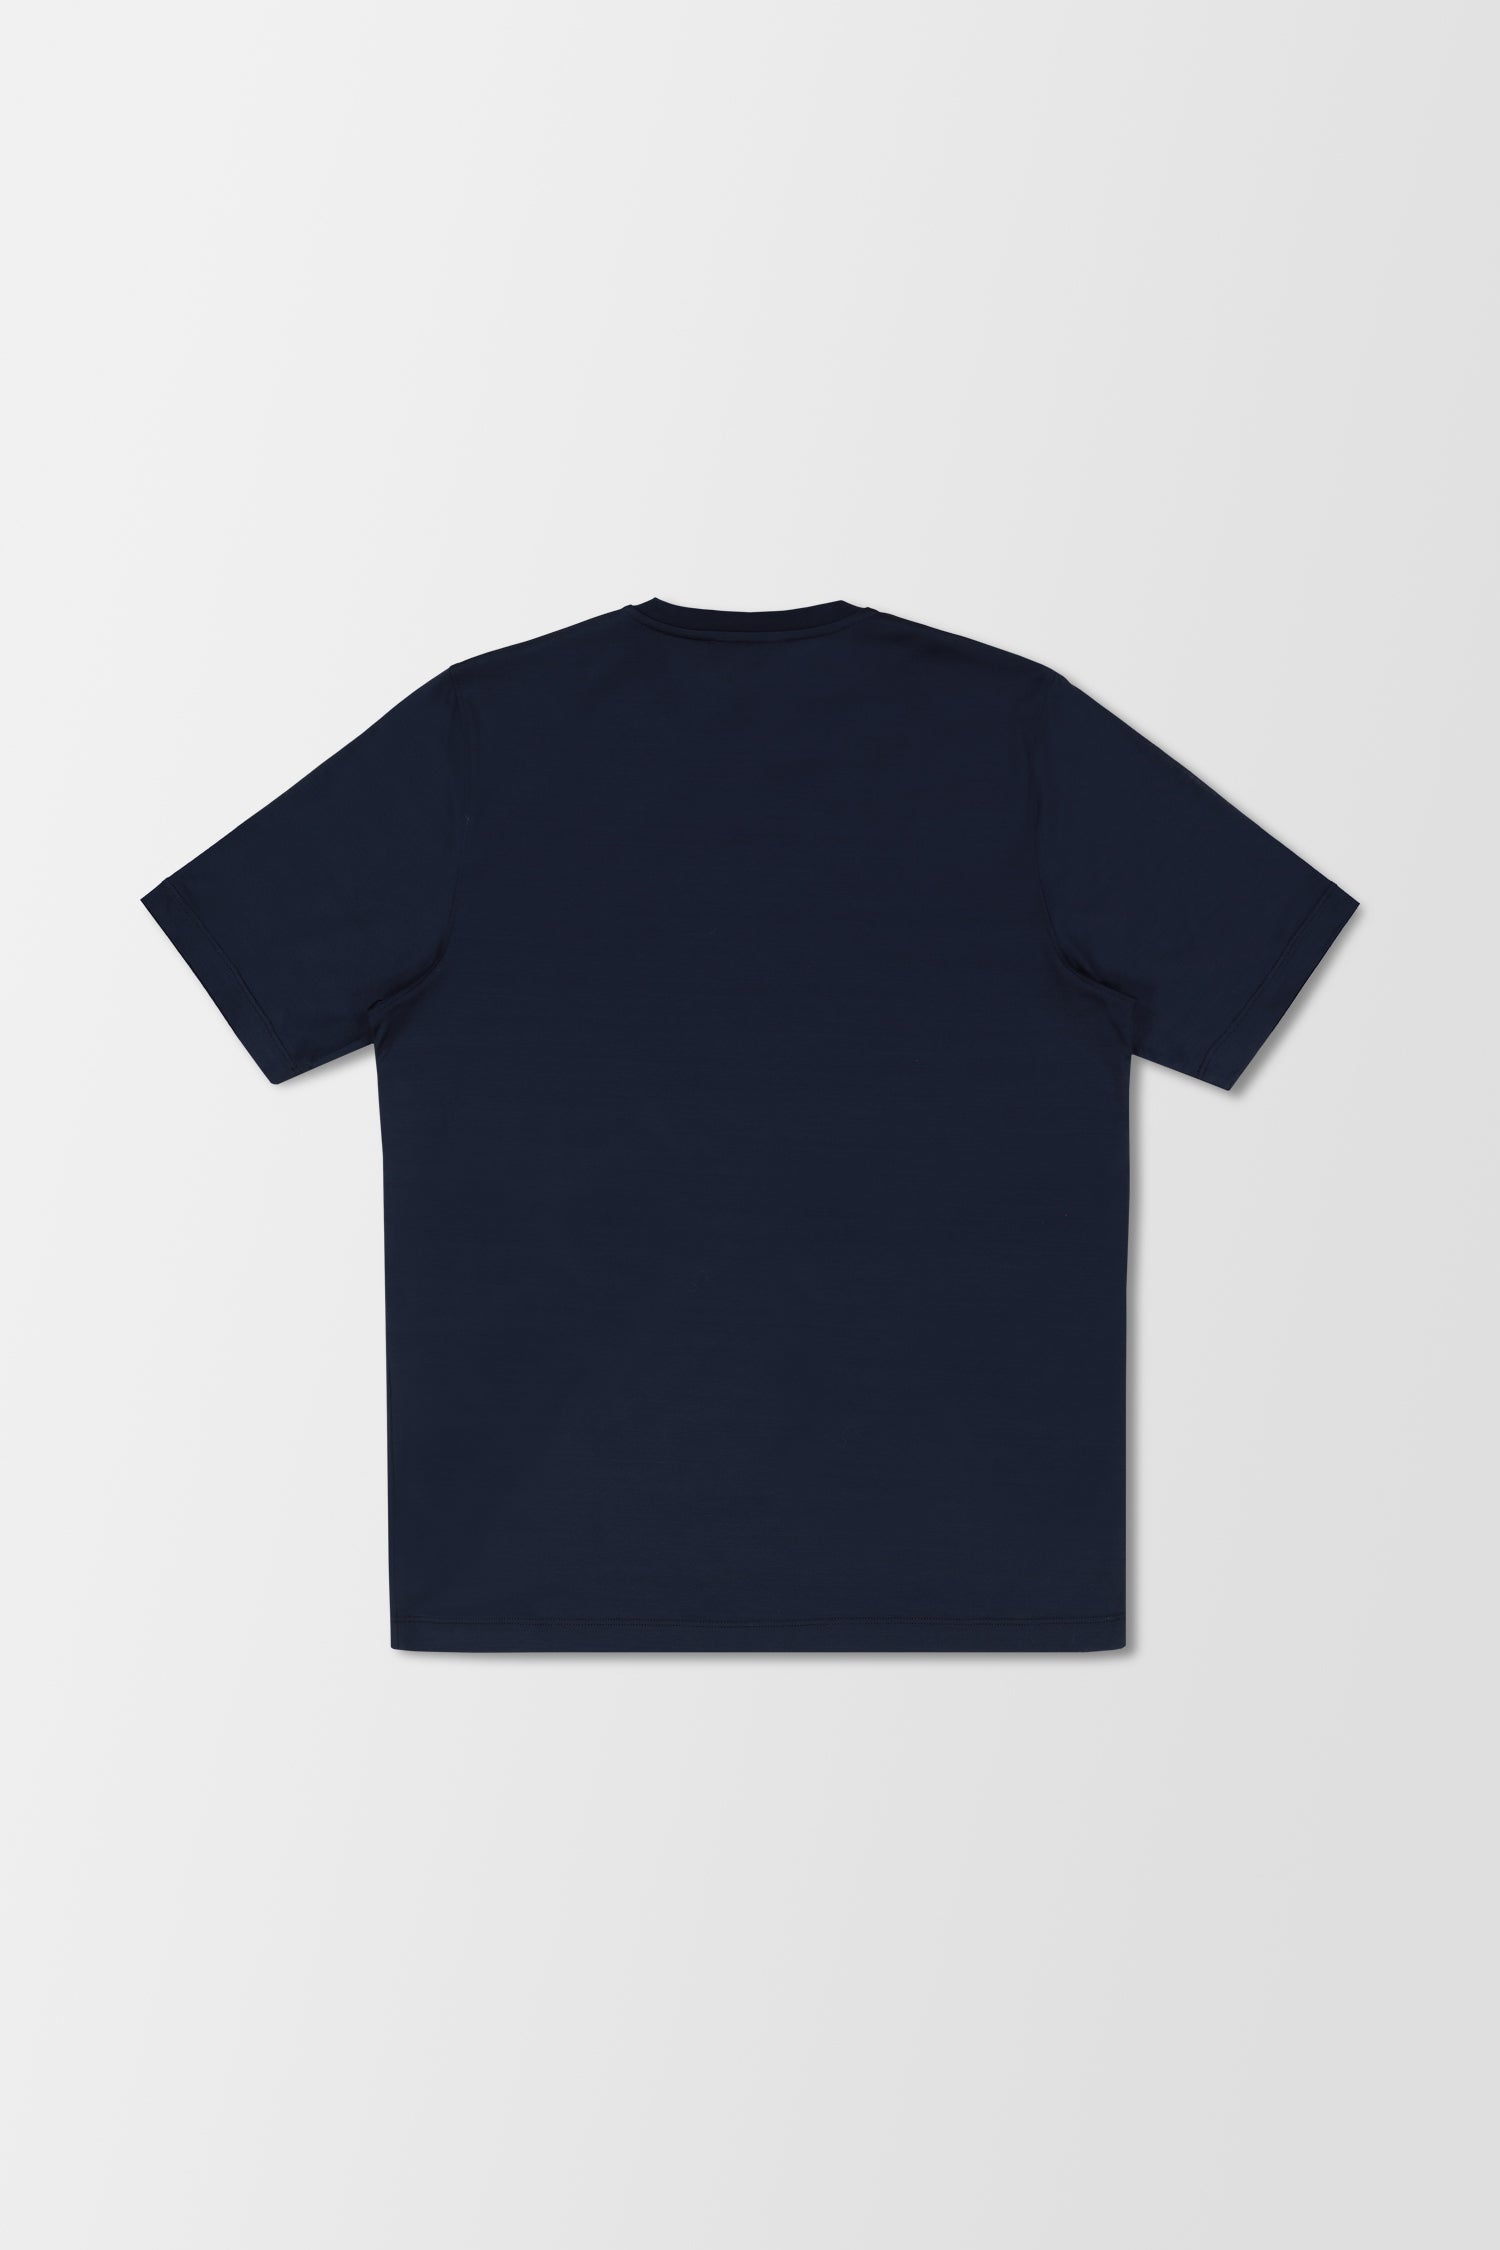 Zilli Marine Blue T-Shirt